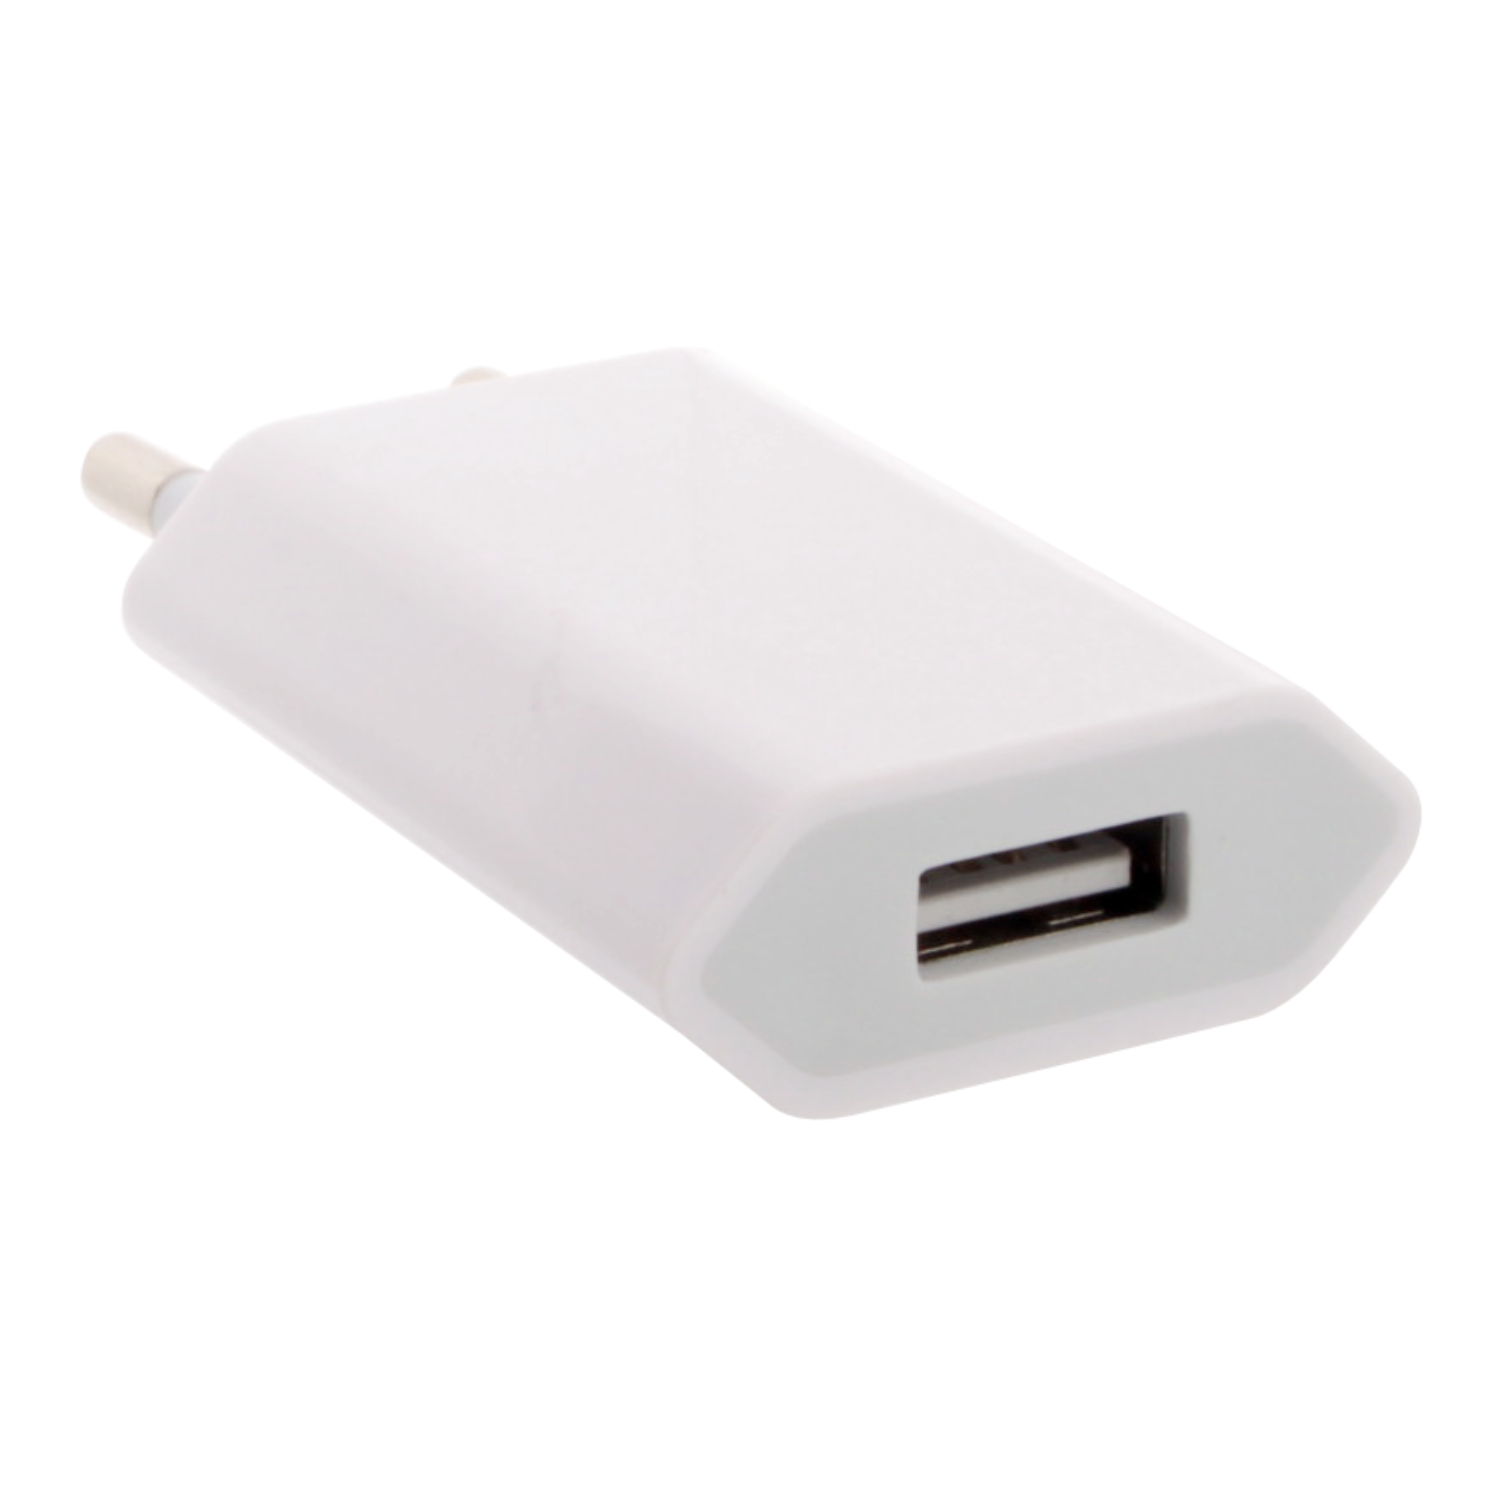 СЗУ с USB выходом iPhone плоская 1,0A ОРИГИНАЛ белая